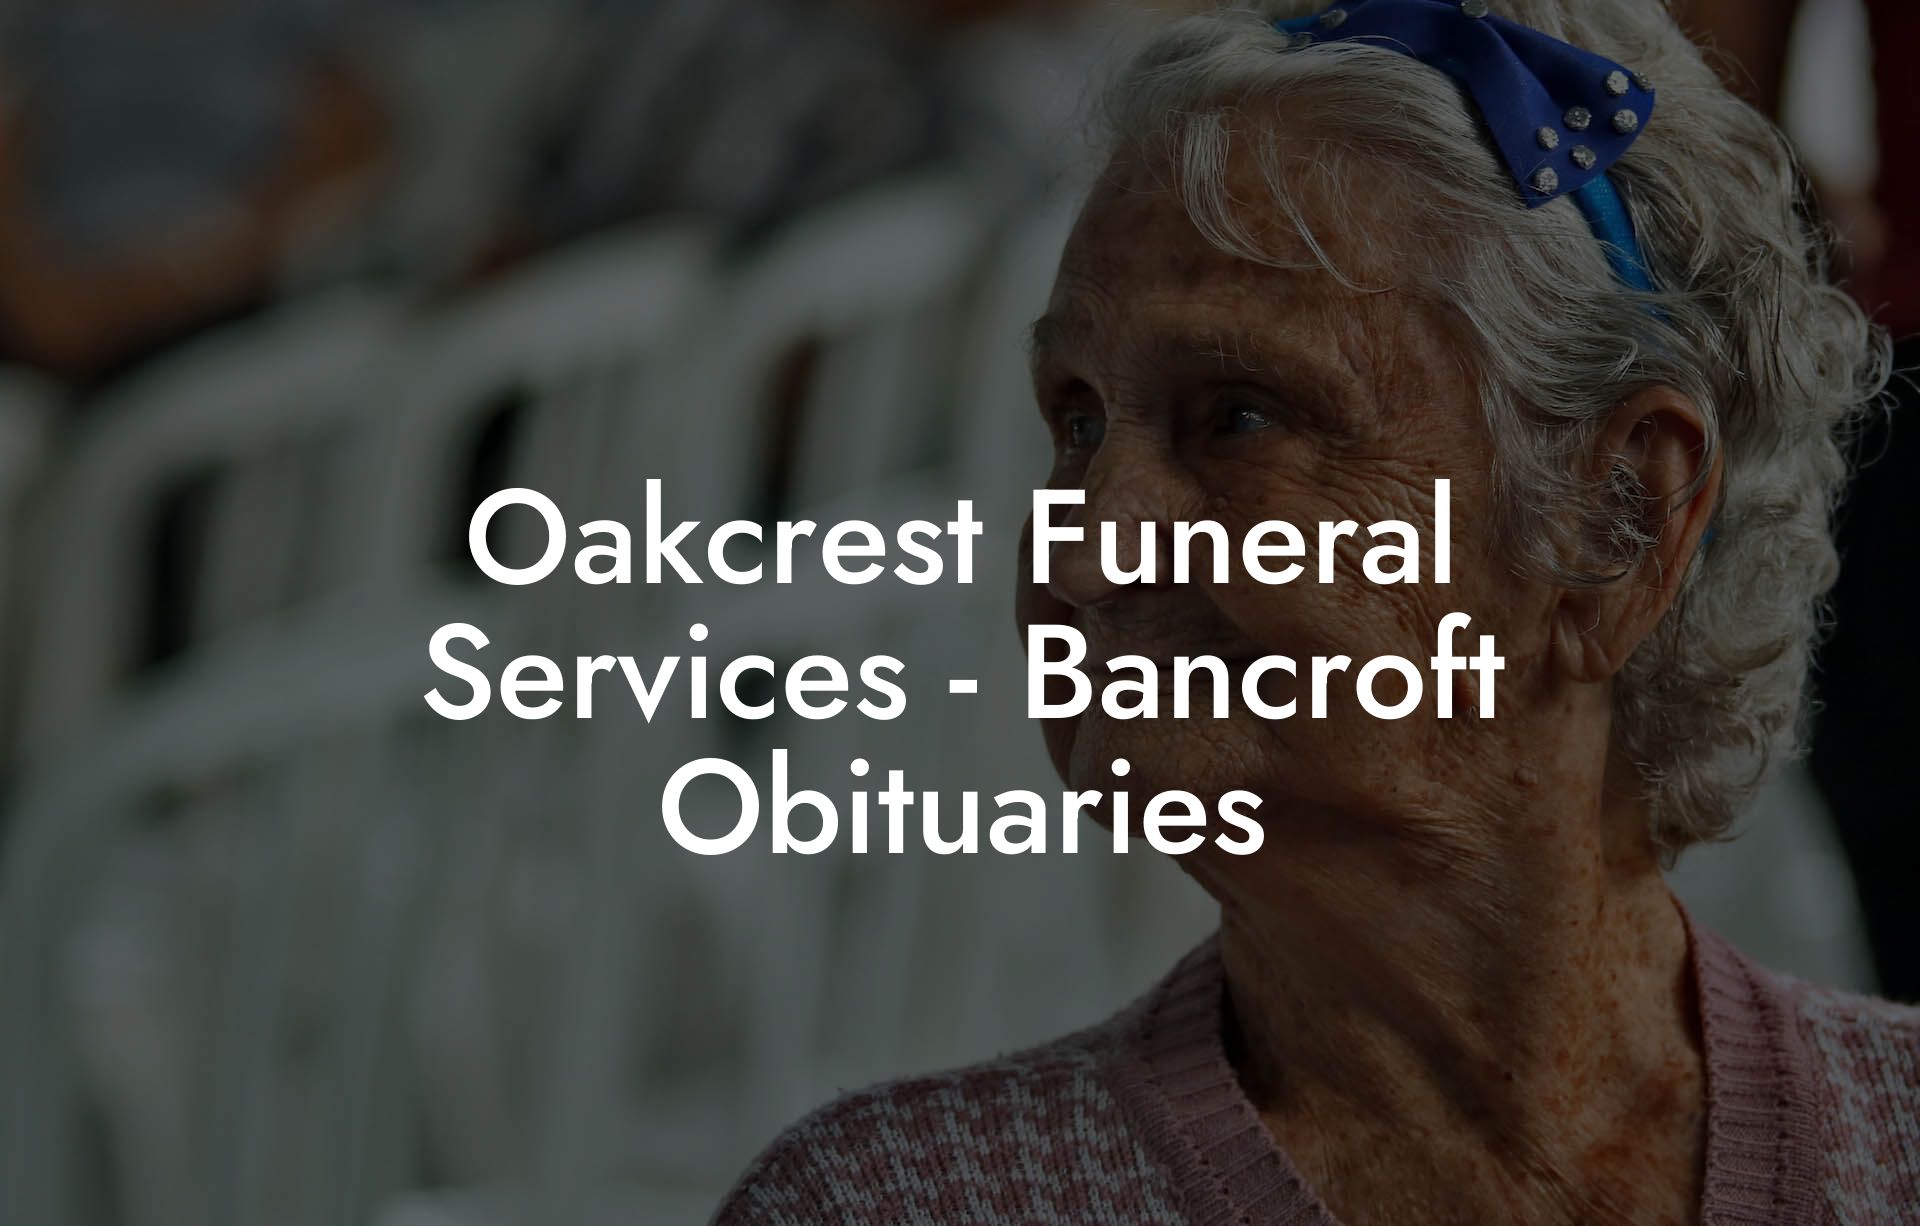 Oakcrest Funeral Services - Bancroft Obituaries